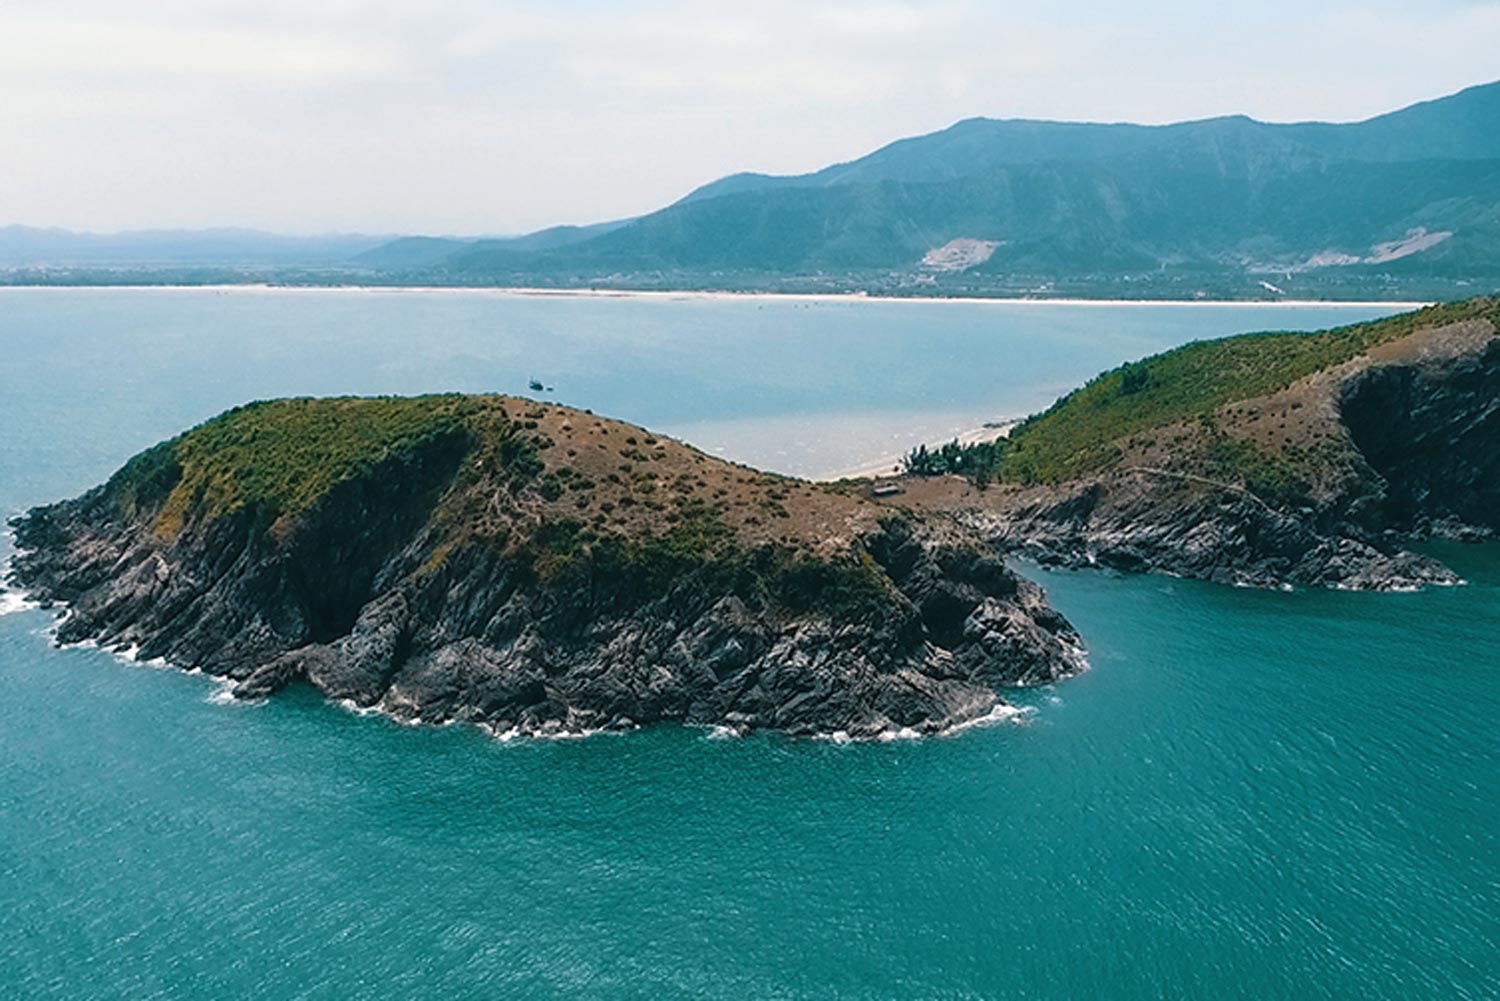 Đảo Yến nằm xa xa đối diện nơi Bác Giáp yên nghỉ.